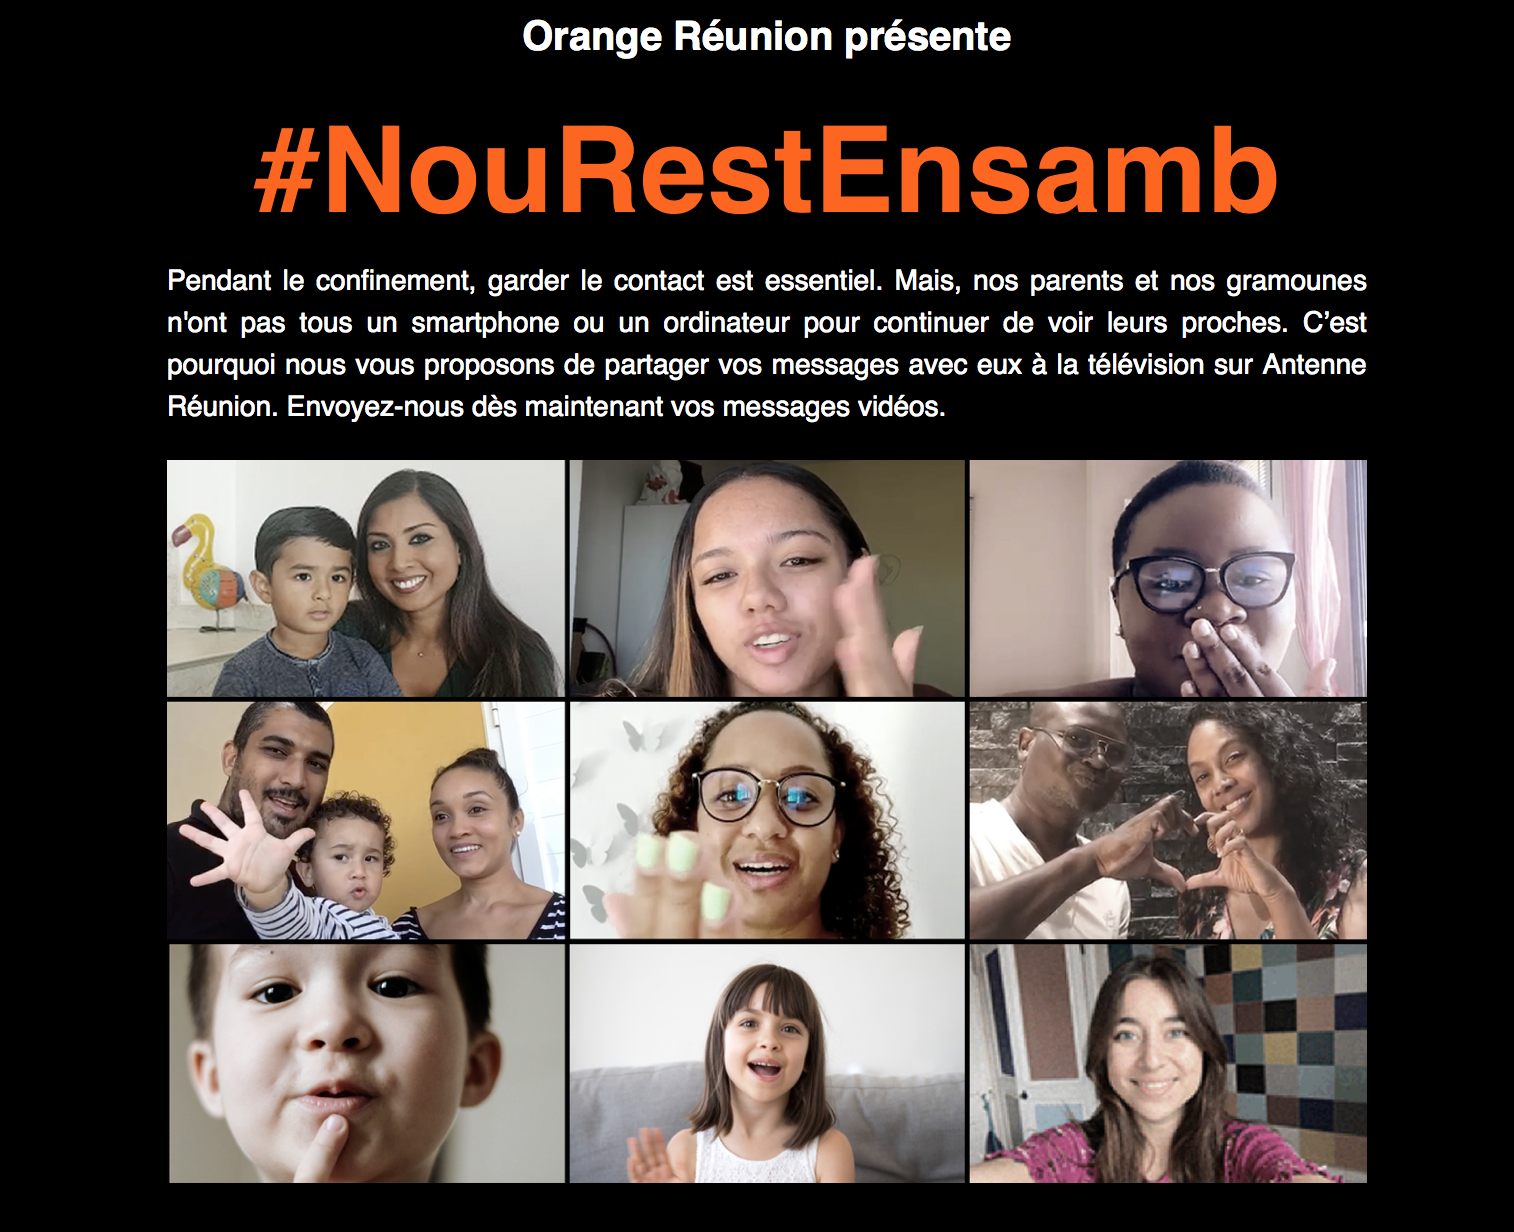 Covid-19- La Réunion: Orange Réunion lance #Nourestensamb pour garder le contact durant le confinement